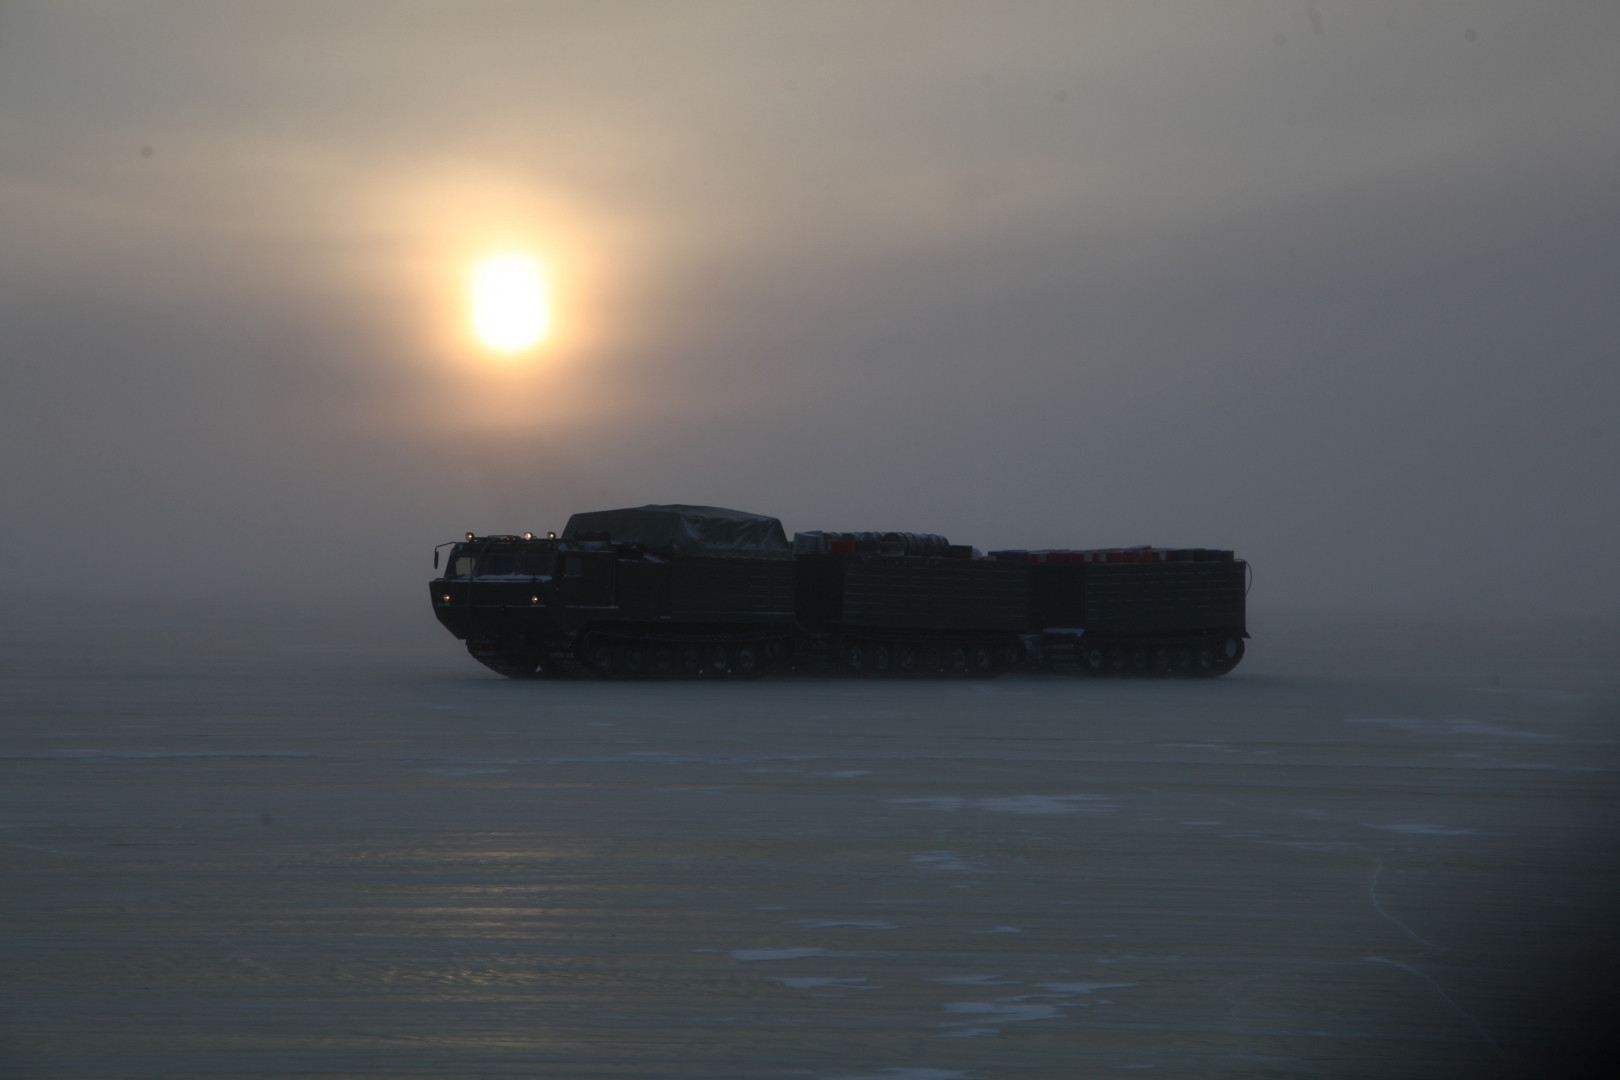 Минобороны РФ проводит испытания военной техники в условиях Арктики